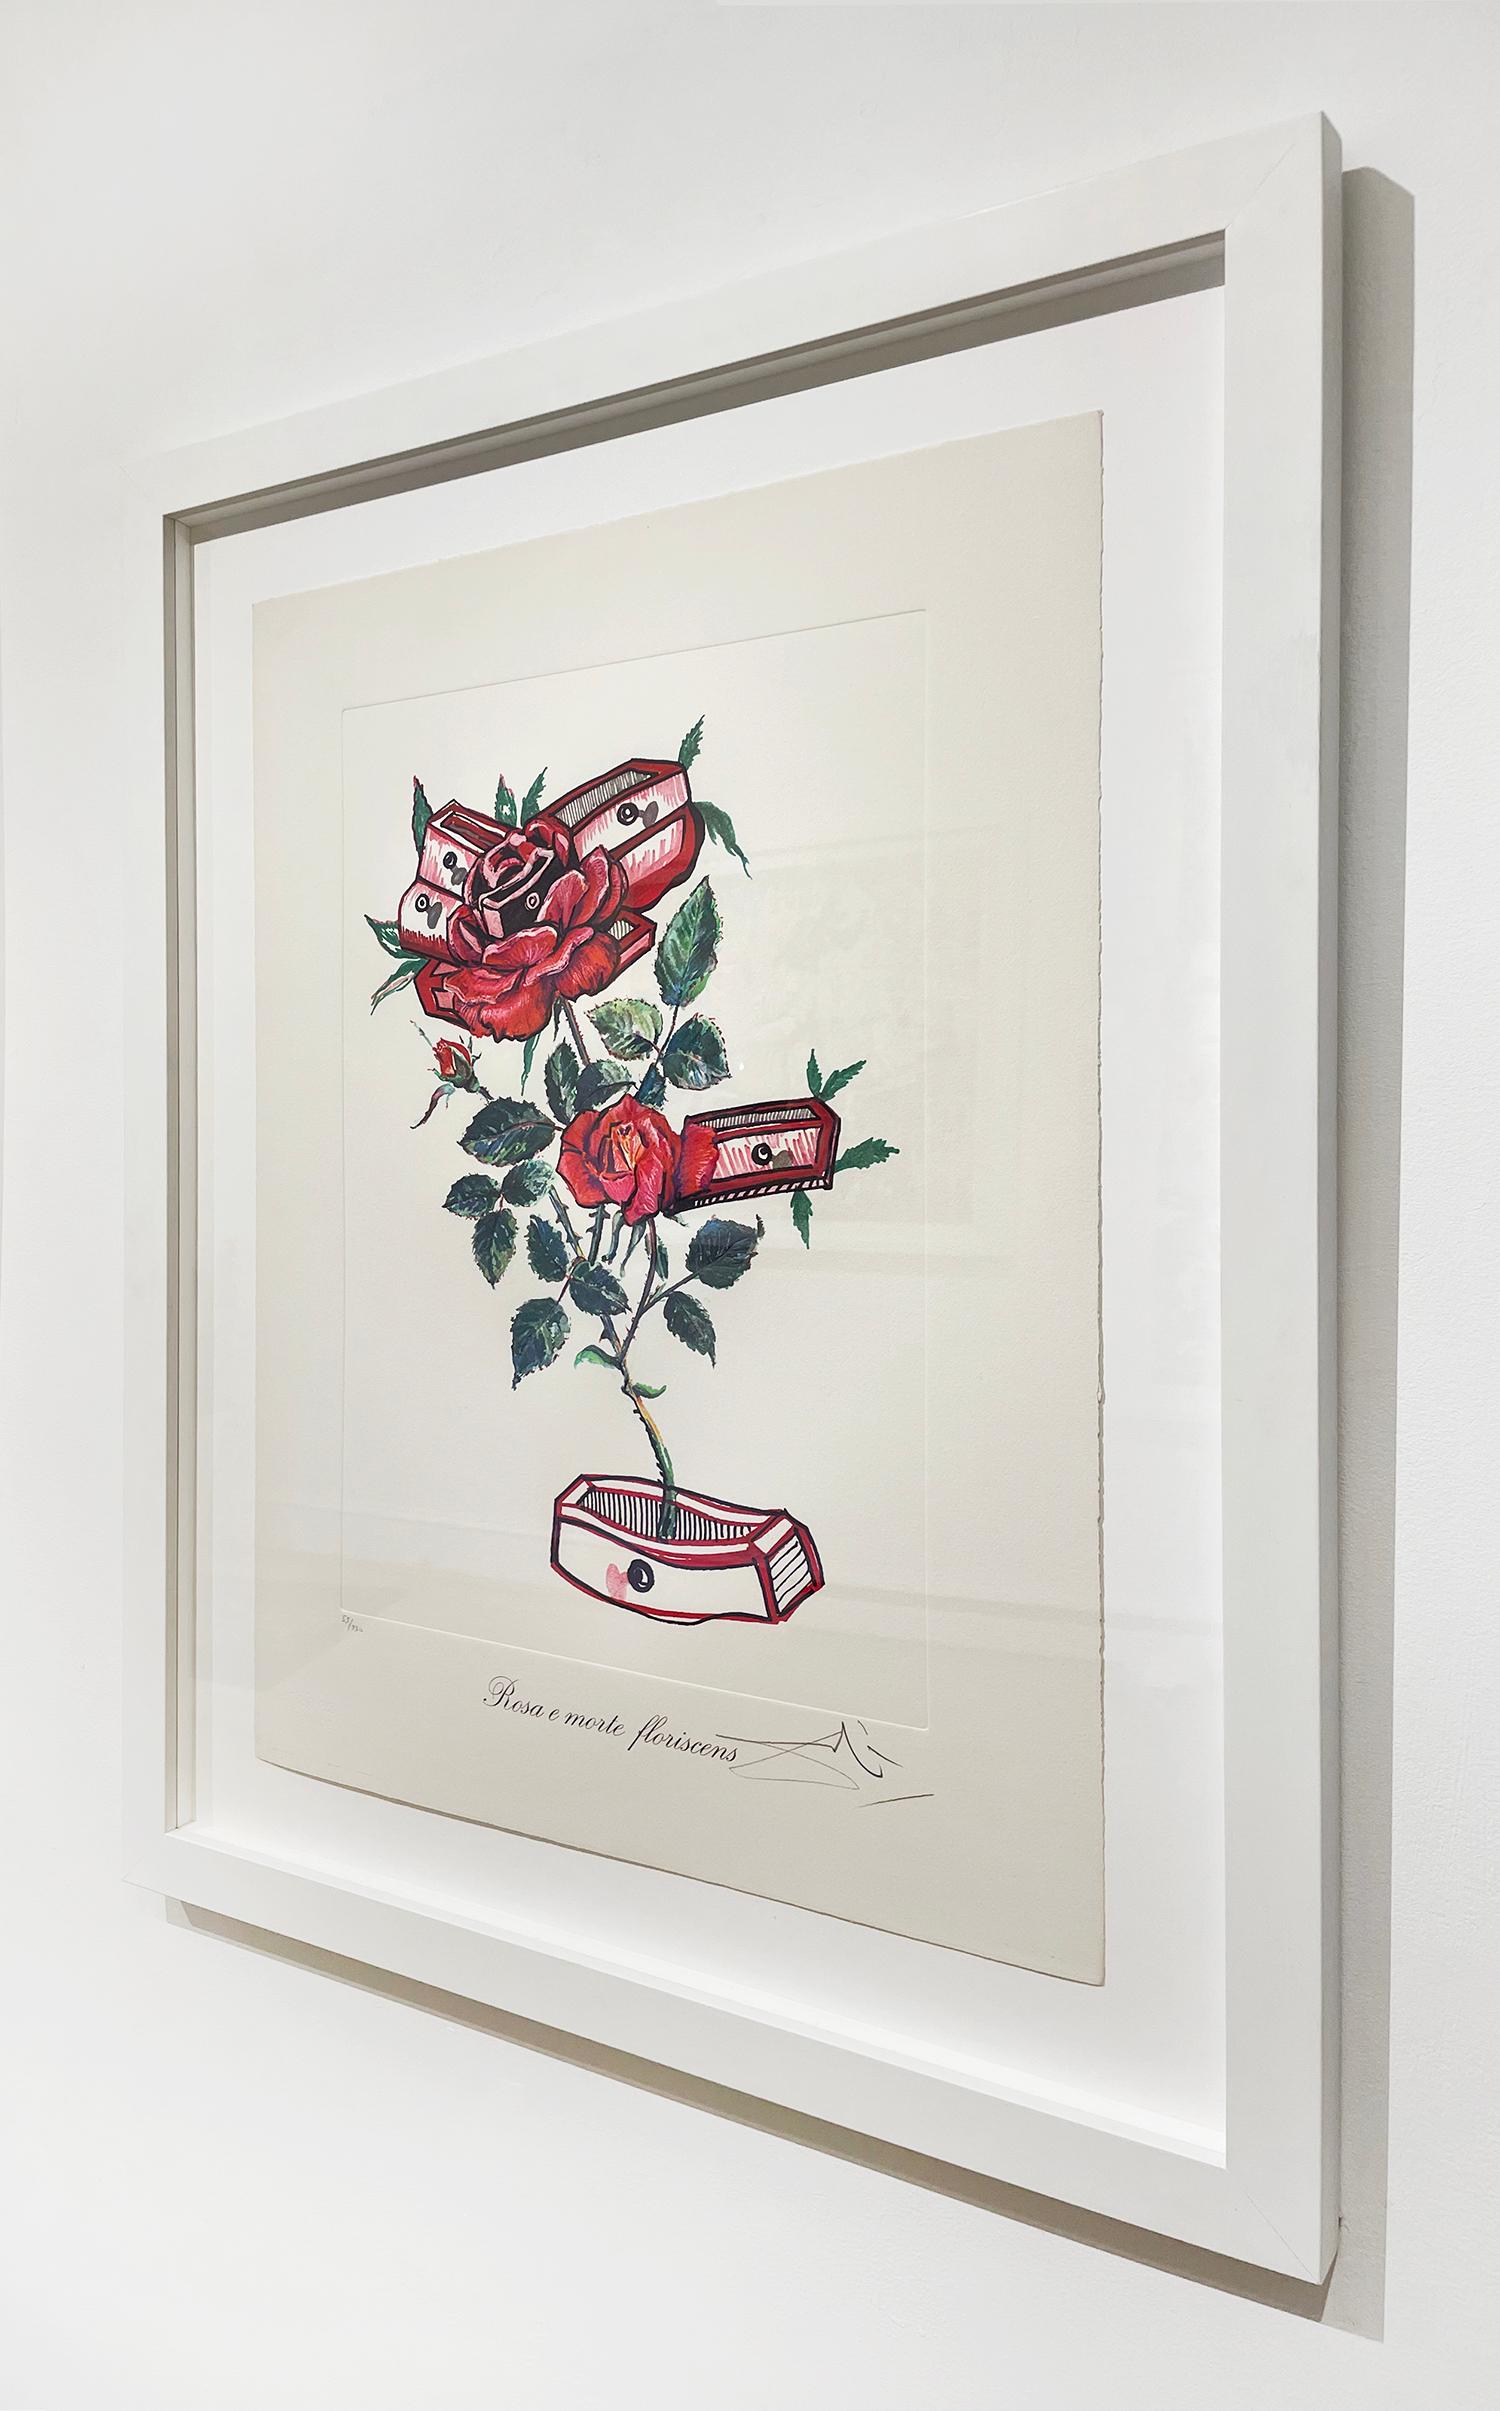 Künstler:  Dali, Salvador
Titel:  Rosa et Morte Flariscens (Rosen des Gedenkens)
Serie:  Blumen - Surrealistische Blumen
Datum:  1972
Medium:  Lithographie
Gerahmt Abmessungen:  37